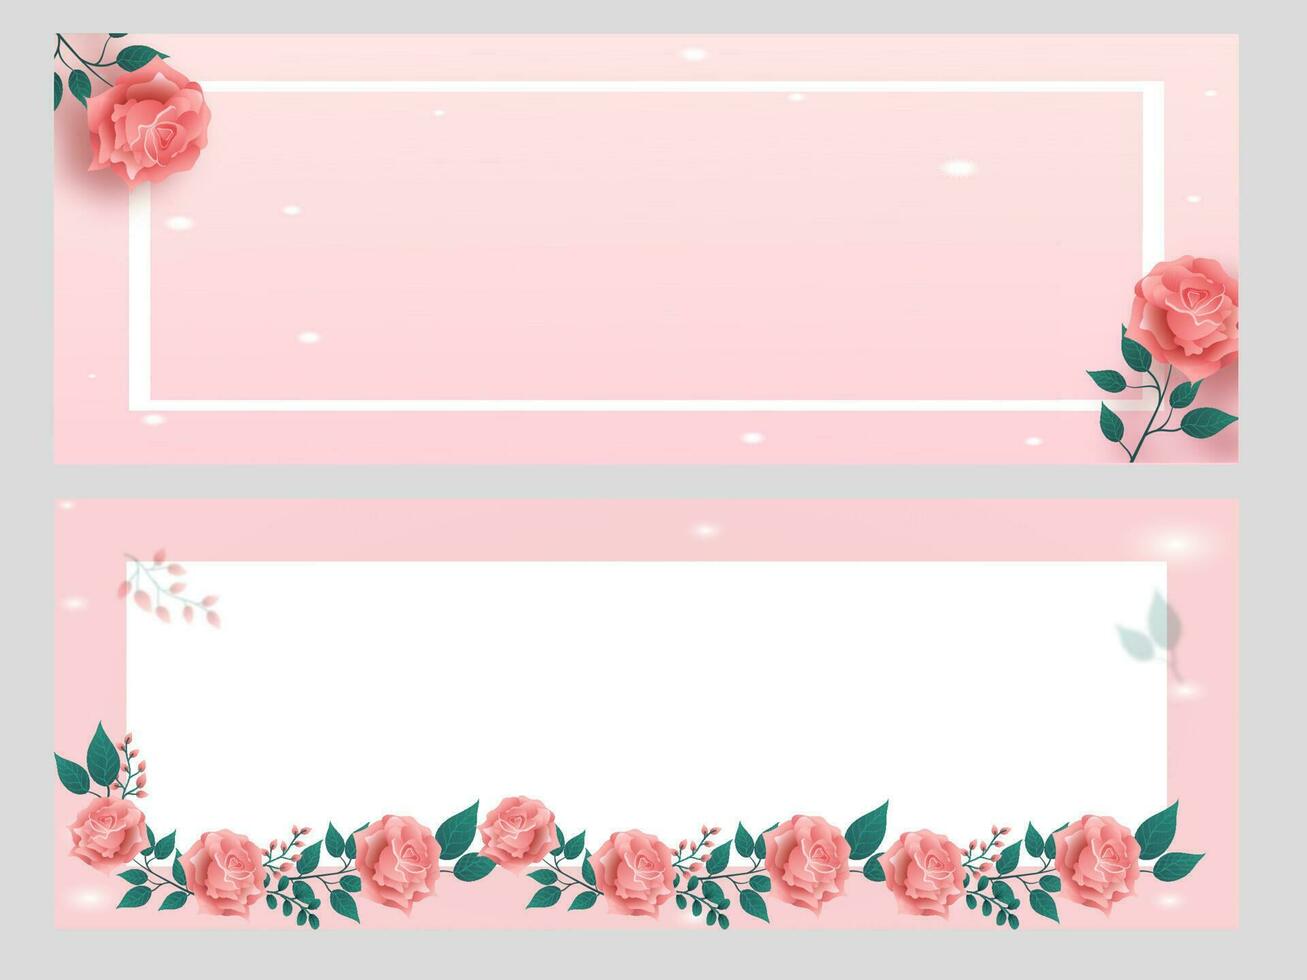 pastel rosado y blanco encabezamiento o bandera decorado desde Rosa flores, hojas con espacio para texto. vector